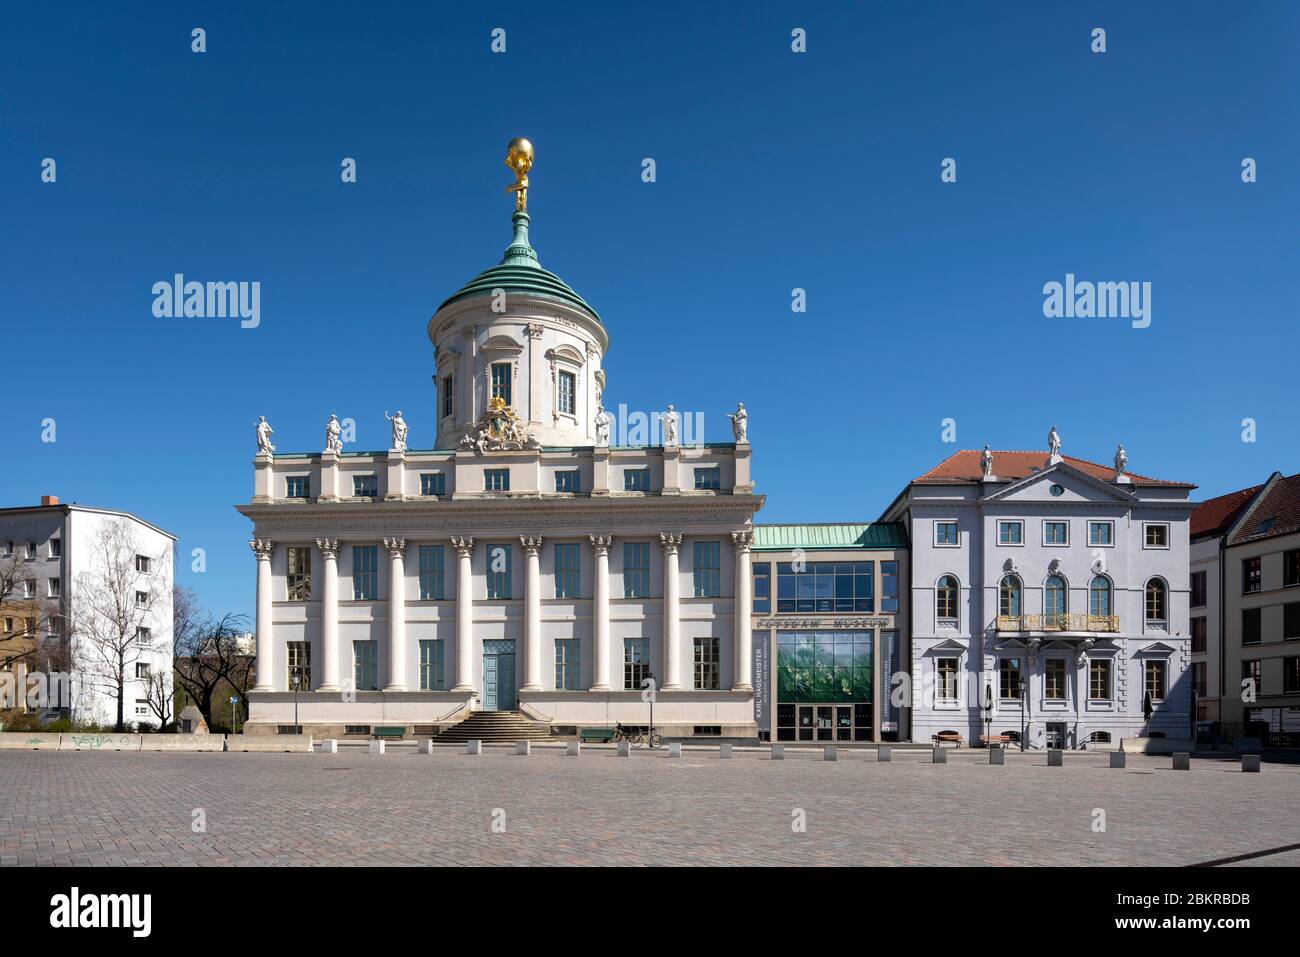 Potsdam, rekonstruierter Alter Markt, Altes Rathaus und Kombelsdorffhaus Foto Stock